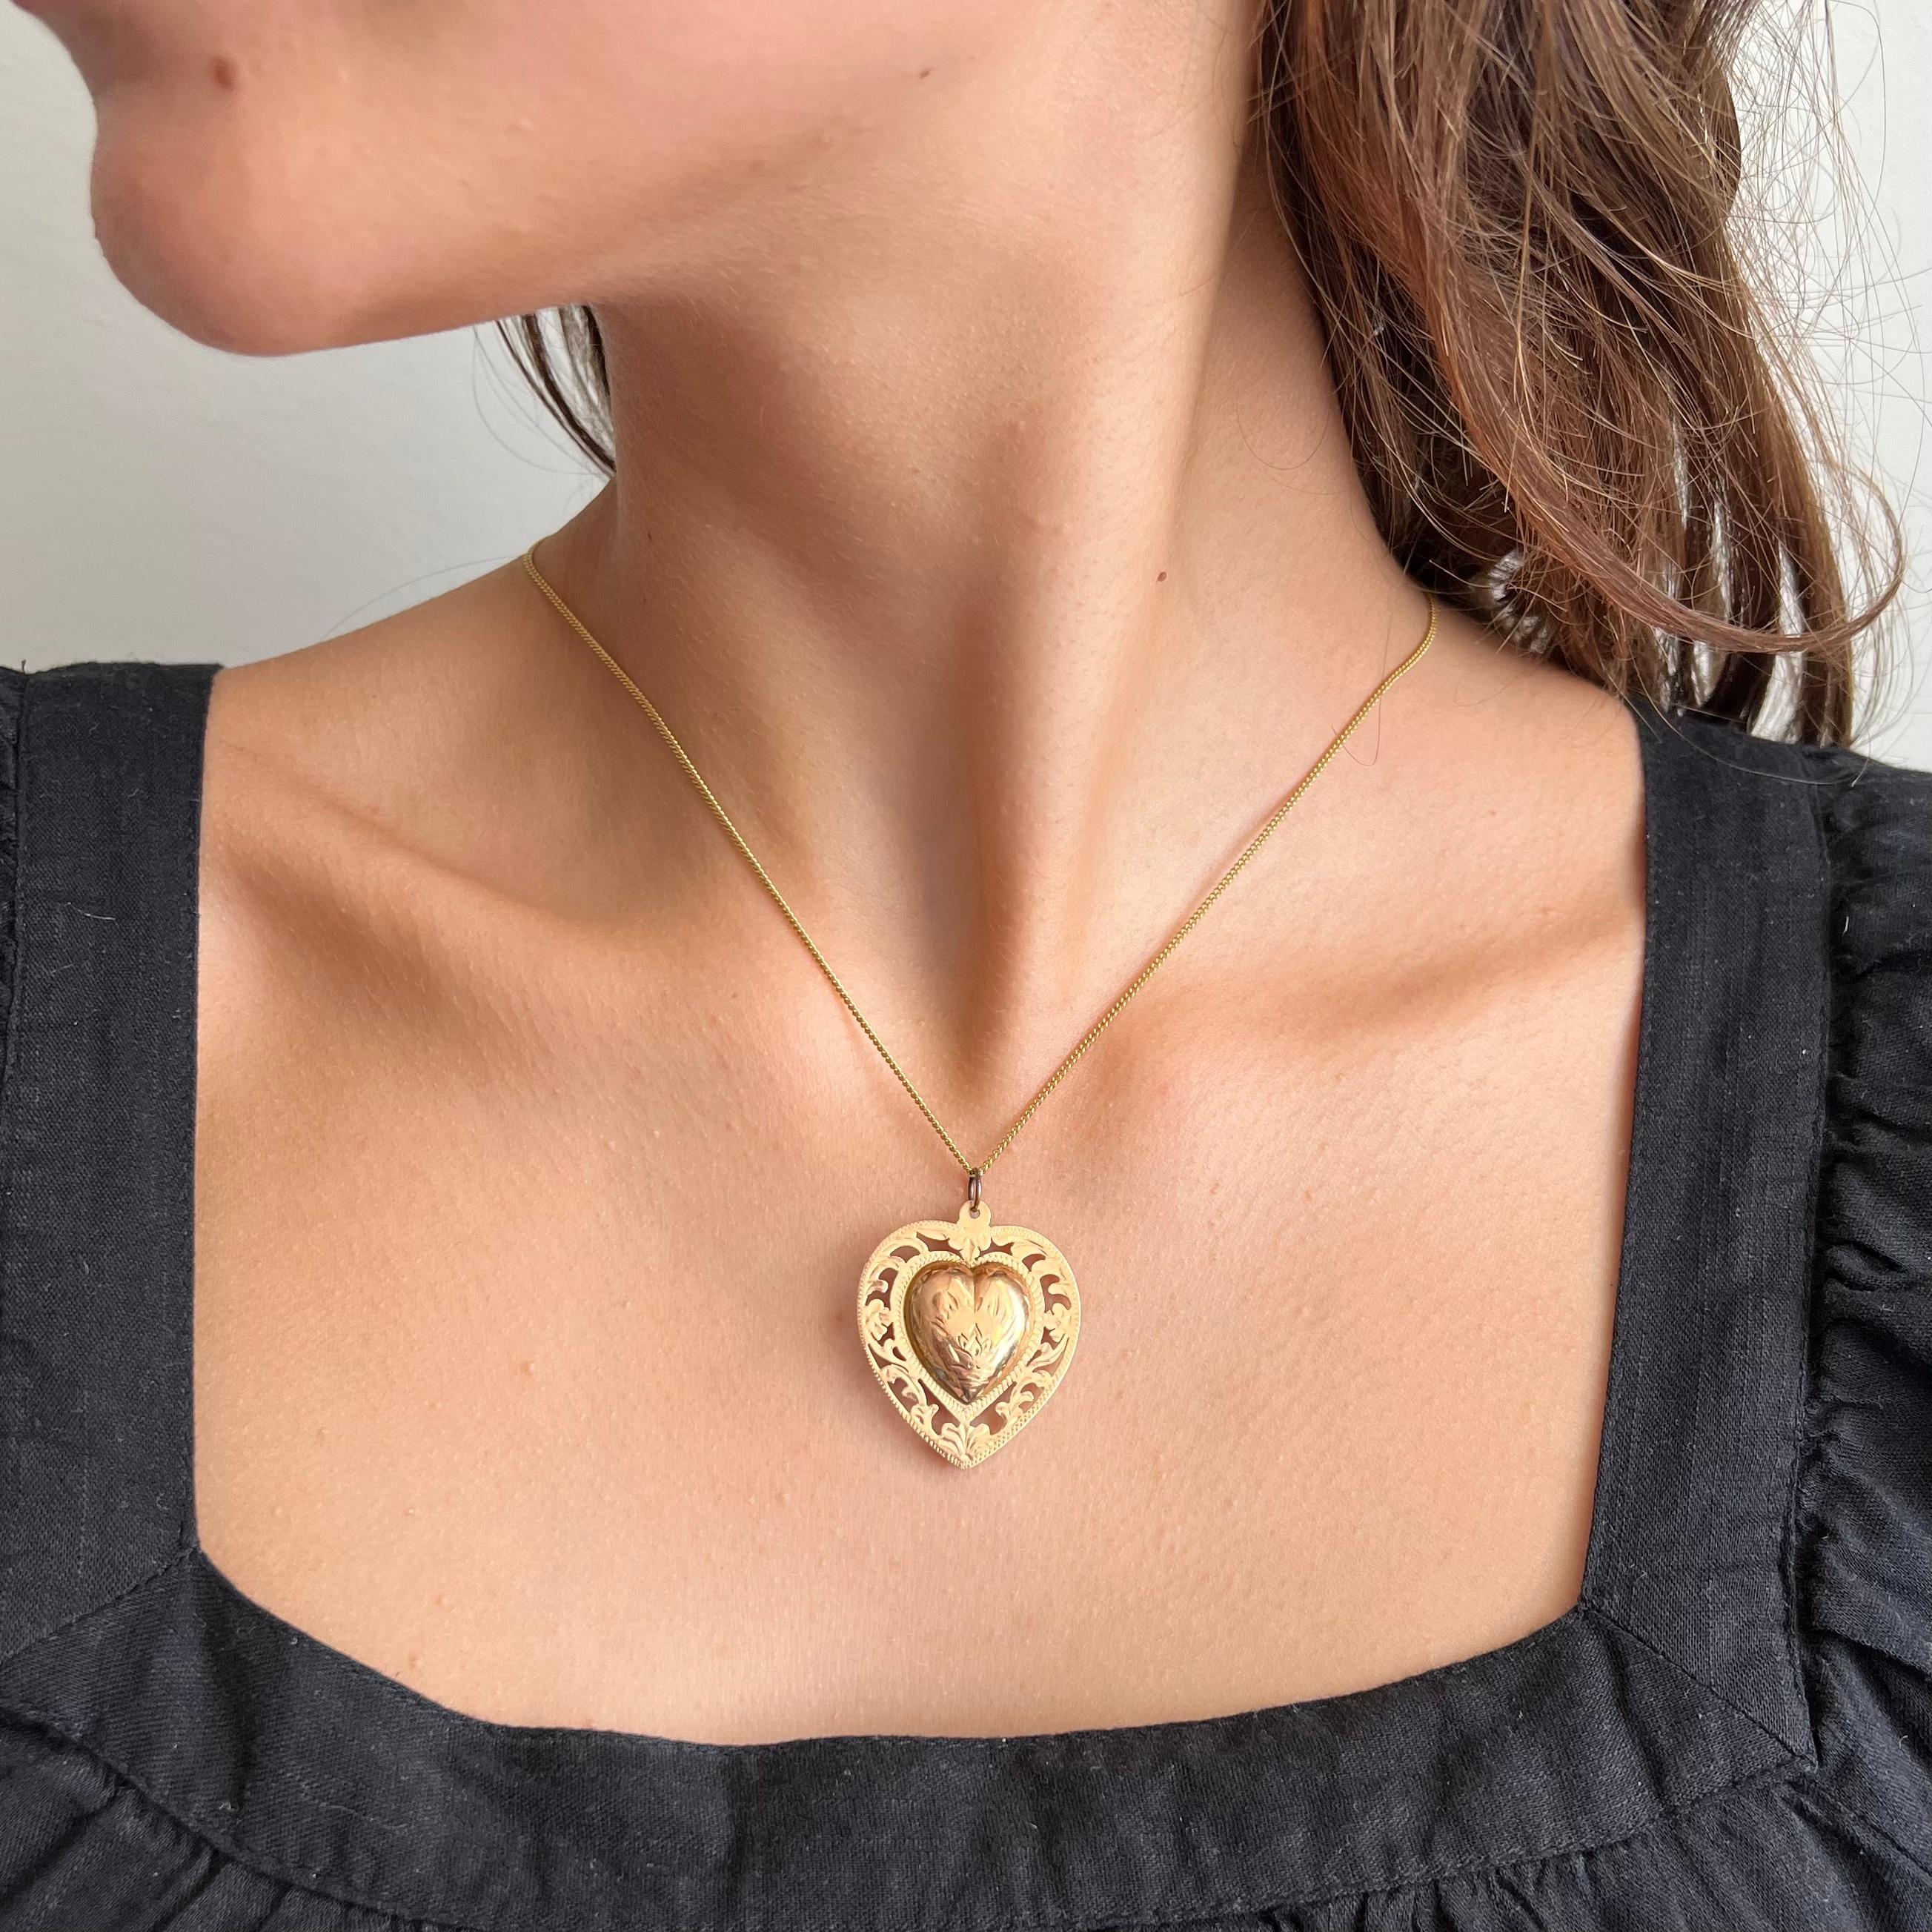 Eine große viktorianische 14 Karat Gelbgold Medaillon Herz-Anhänger. Dieses hübsche Herzmotiv hat eine durchbrochene Bordüre mit einem floralen Muster aus Blättern und Blüten. In der Mitte des geschwollenen Herzens sind schöne Details eingraviert.